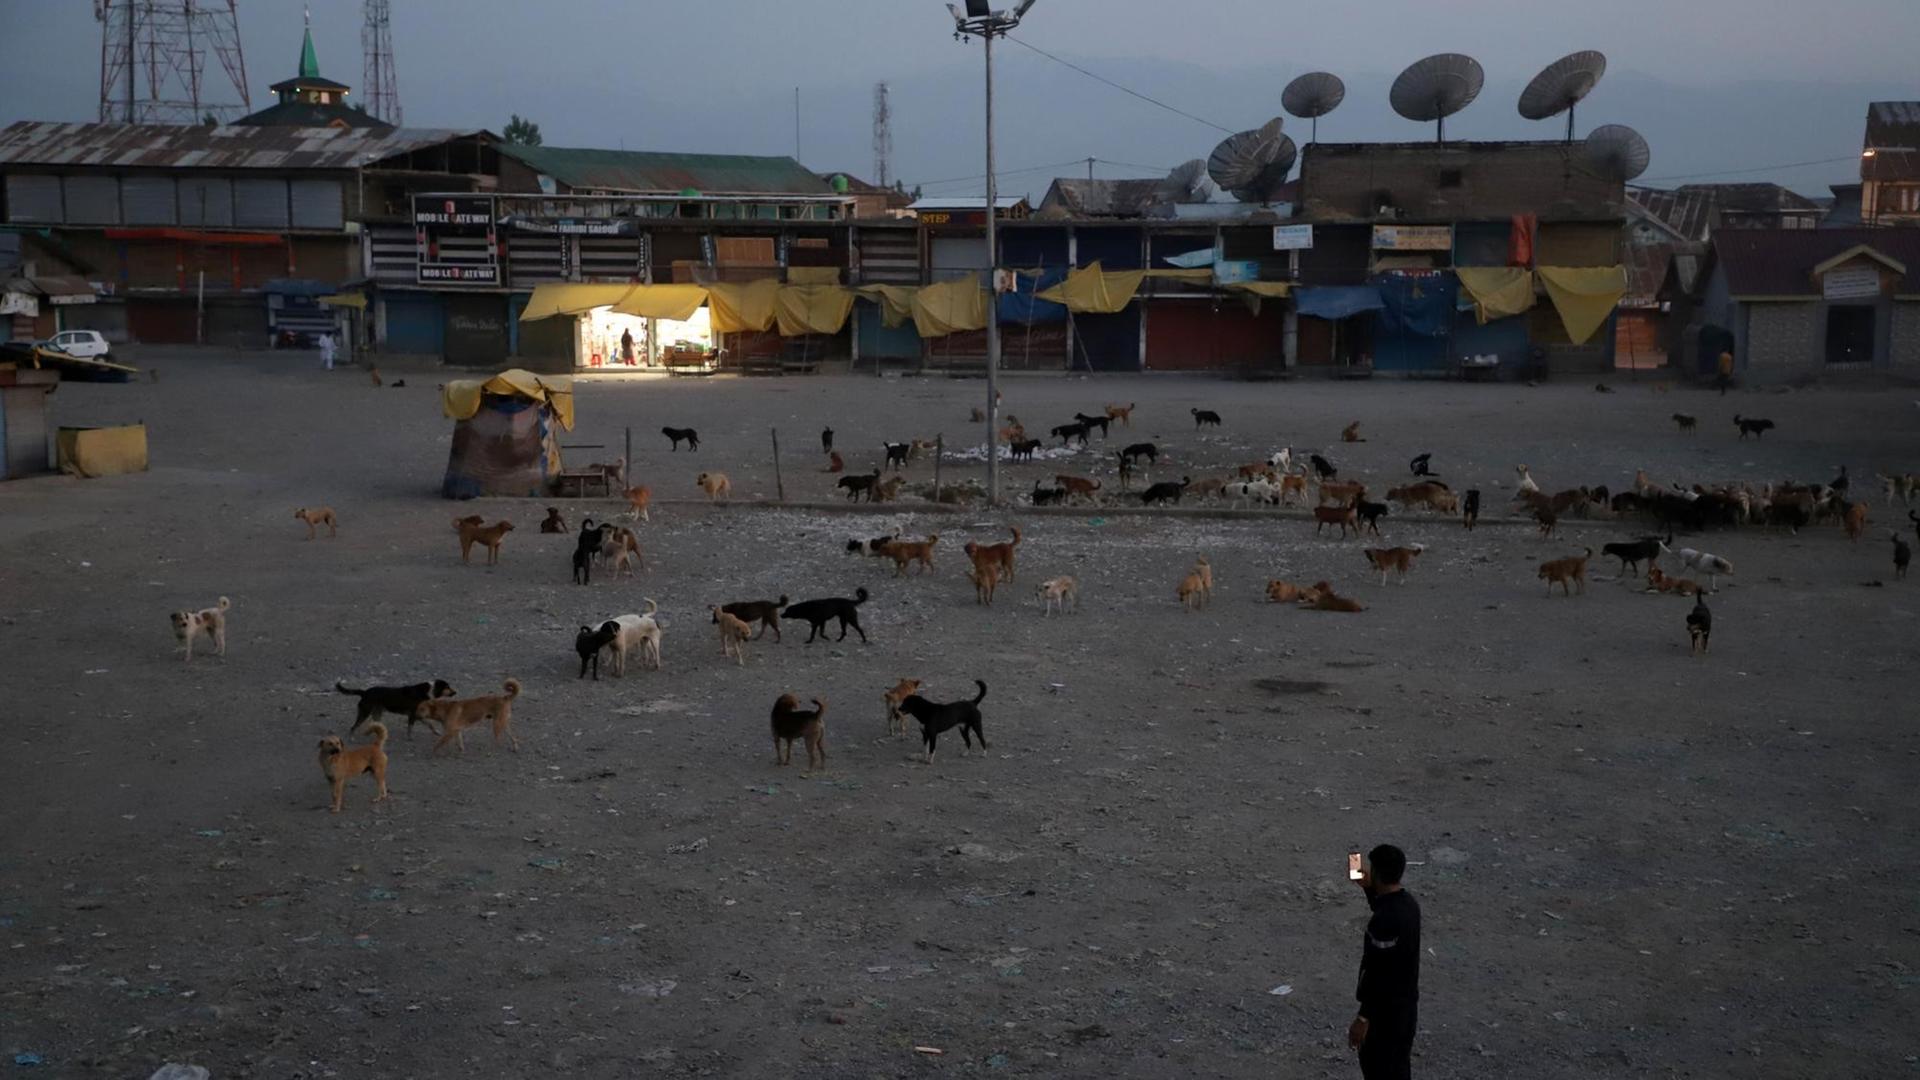 Dämmerung: Ein Junge macht ein Foto der Fütterung, auf einem weitläufigen Platz vor einer Wohnsiedlung sind bestimmt an die hundert Hunde.